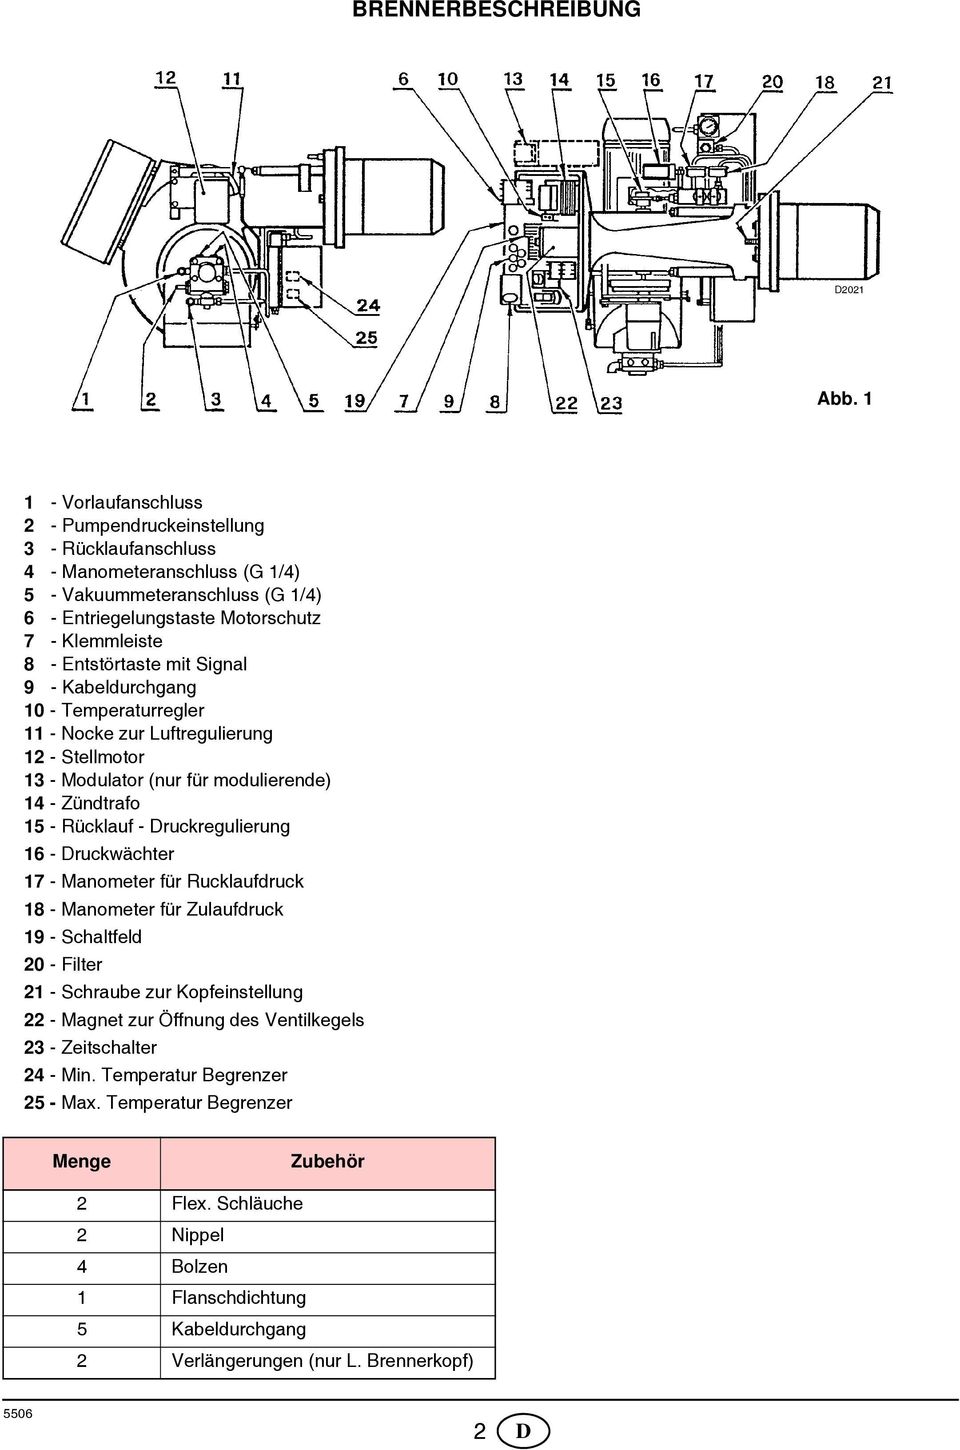 Entstörtaste mit Signal 9 - Kabeldurchgang 10 - Temperaturregler 11 - Nocke zur Luftregulierung 12 - Stellmotor 13 - Modulator (nur für modulierende) 14 - Zündtrafo 15 - Rücklauf - Druckregulierung